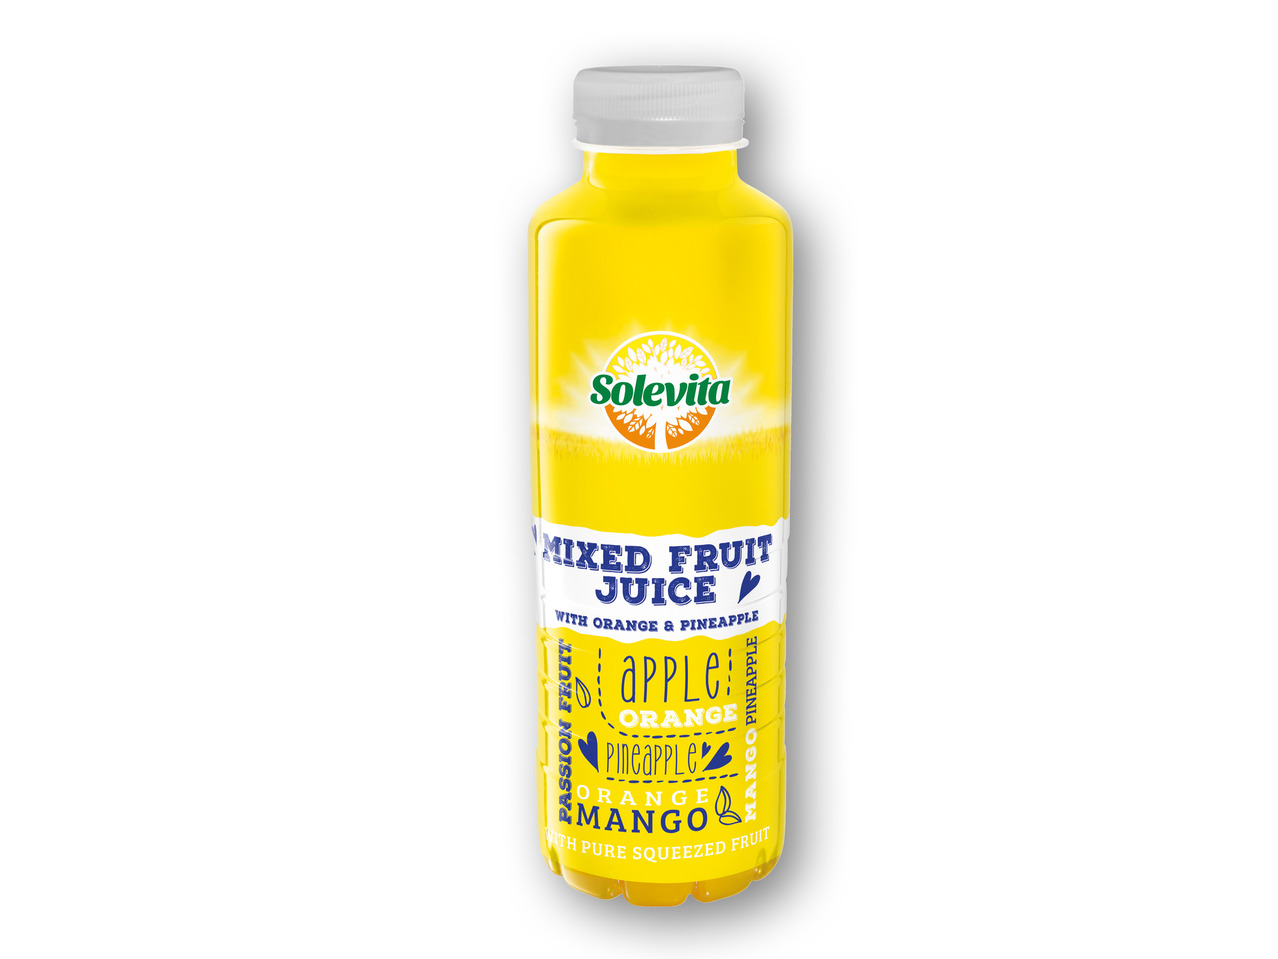 SOLEVITA Juice